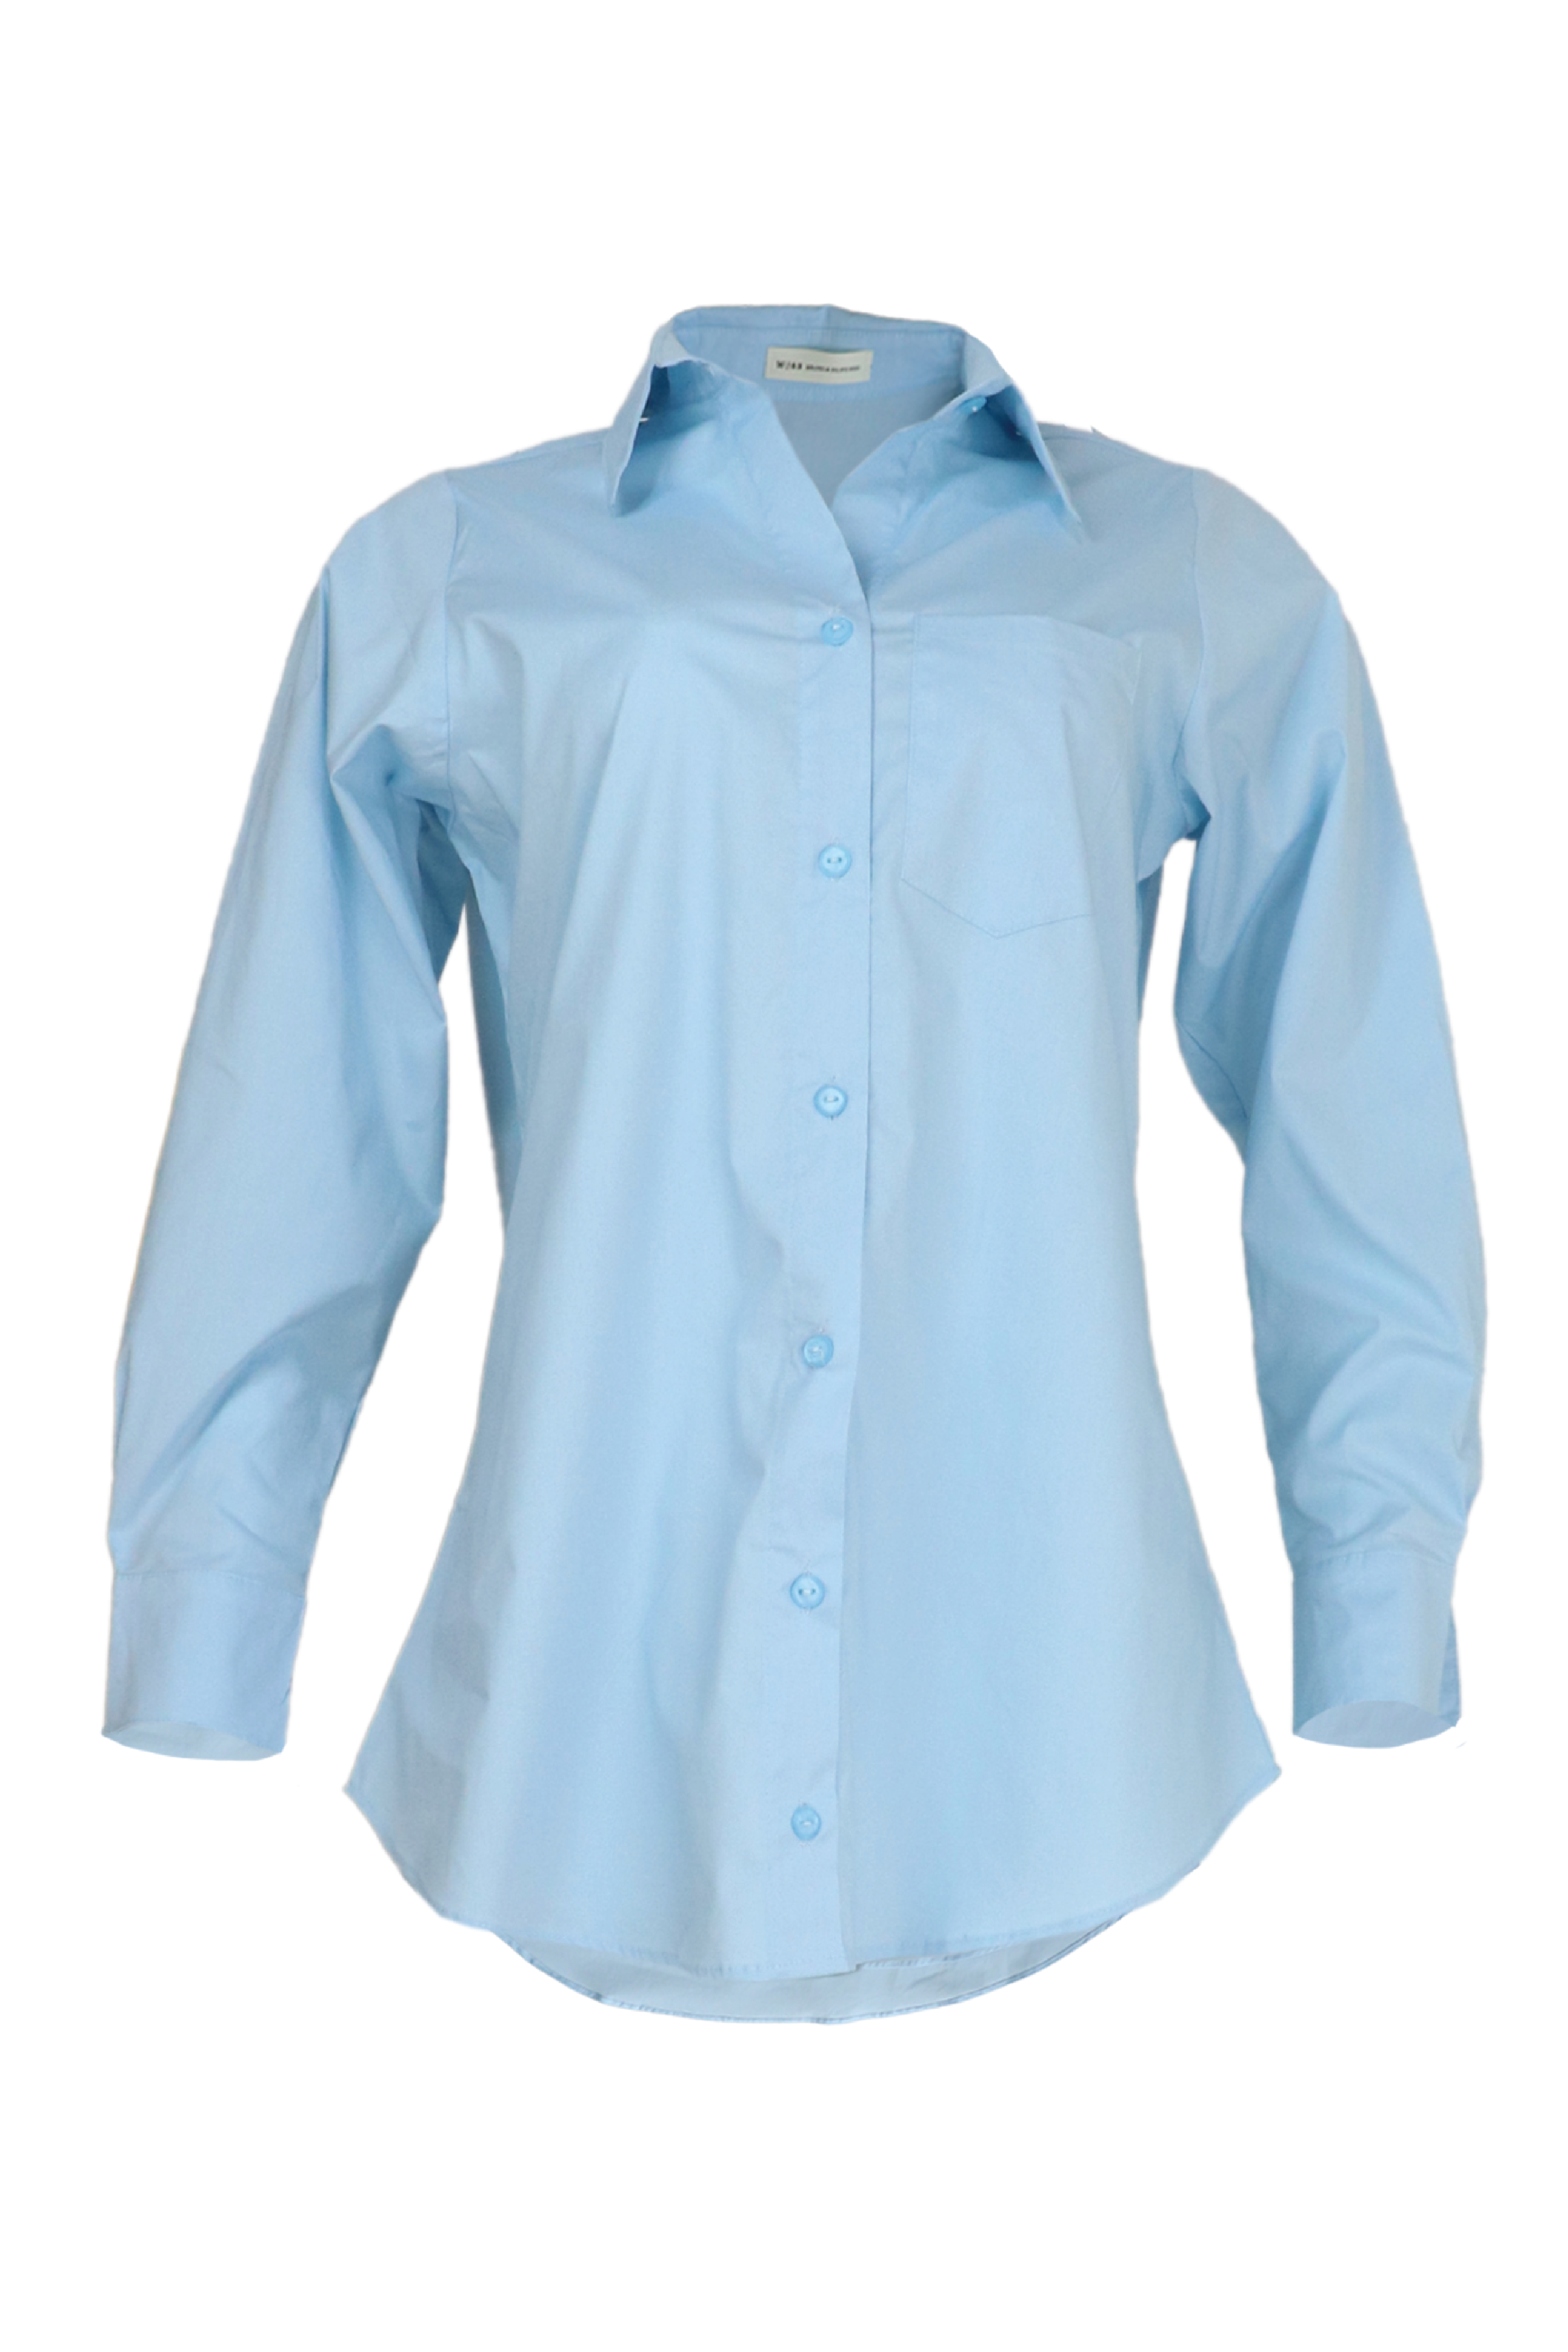 Camisa azul clara manga larga